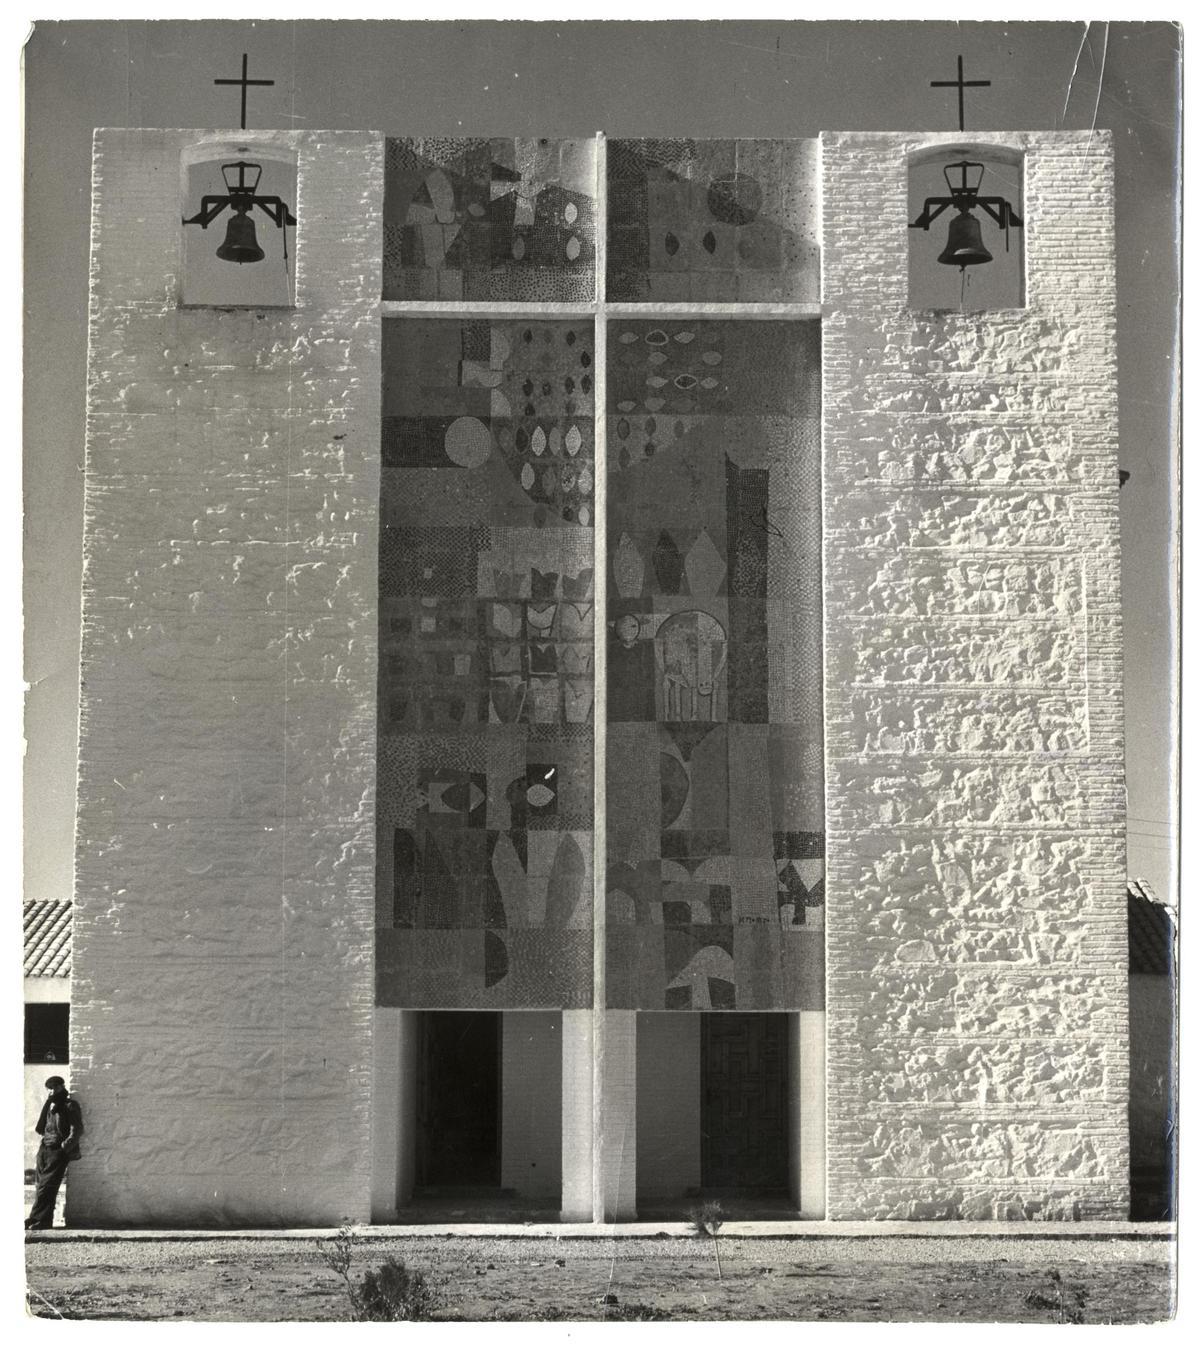 Iglesia de Villalba de Calatrava (Ciudad Real). Arquitecto: José Luis Fernández del Amo. Fotografía de Joaquín del Palacio, Kindel, ca.1956.